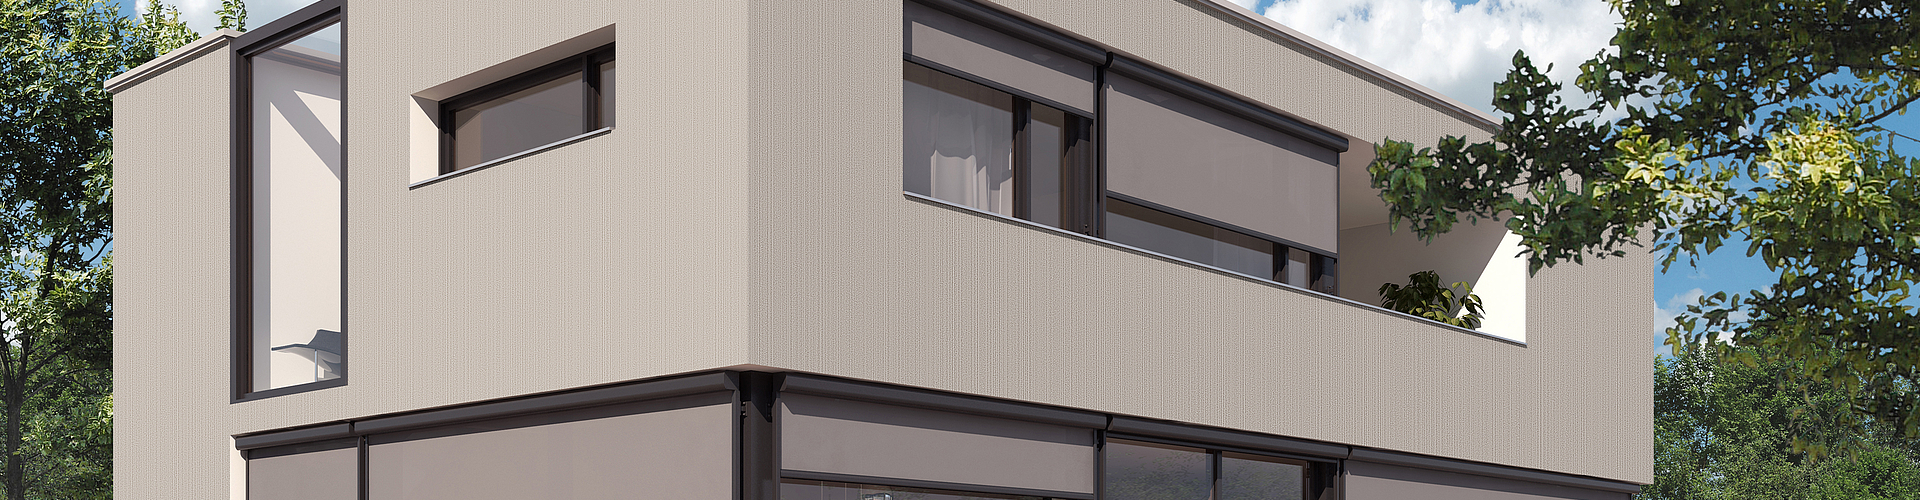 halb geöffnete, graue Fenster/Fassaden-Markisen an grauem, modernem Haus.